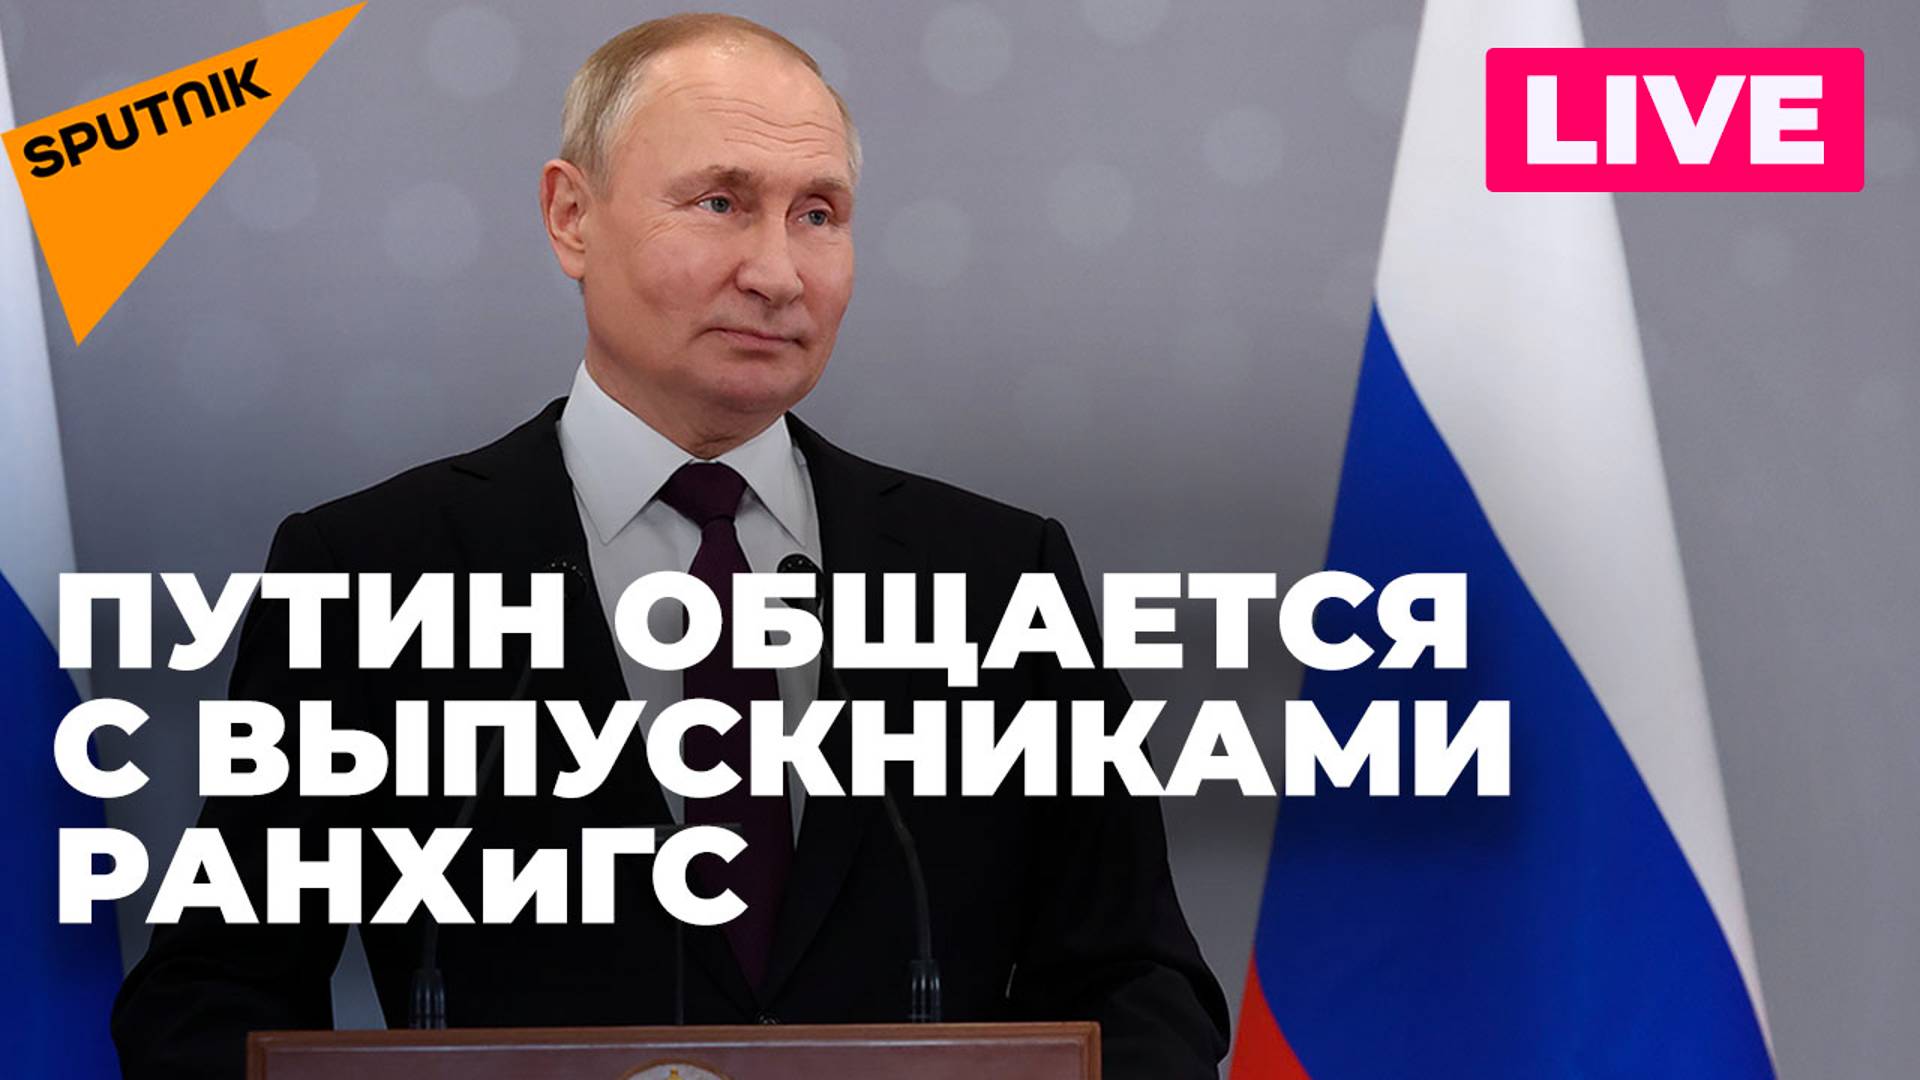 Владимир Путин пообщался с выпускниками РАНХиГС